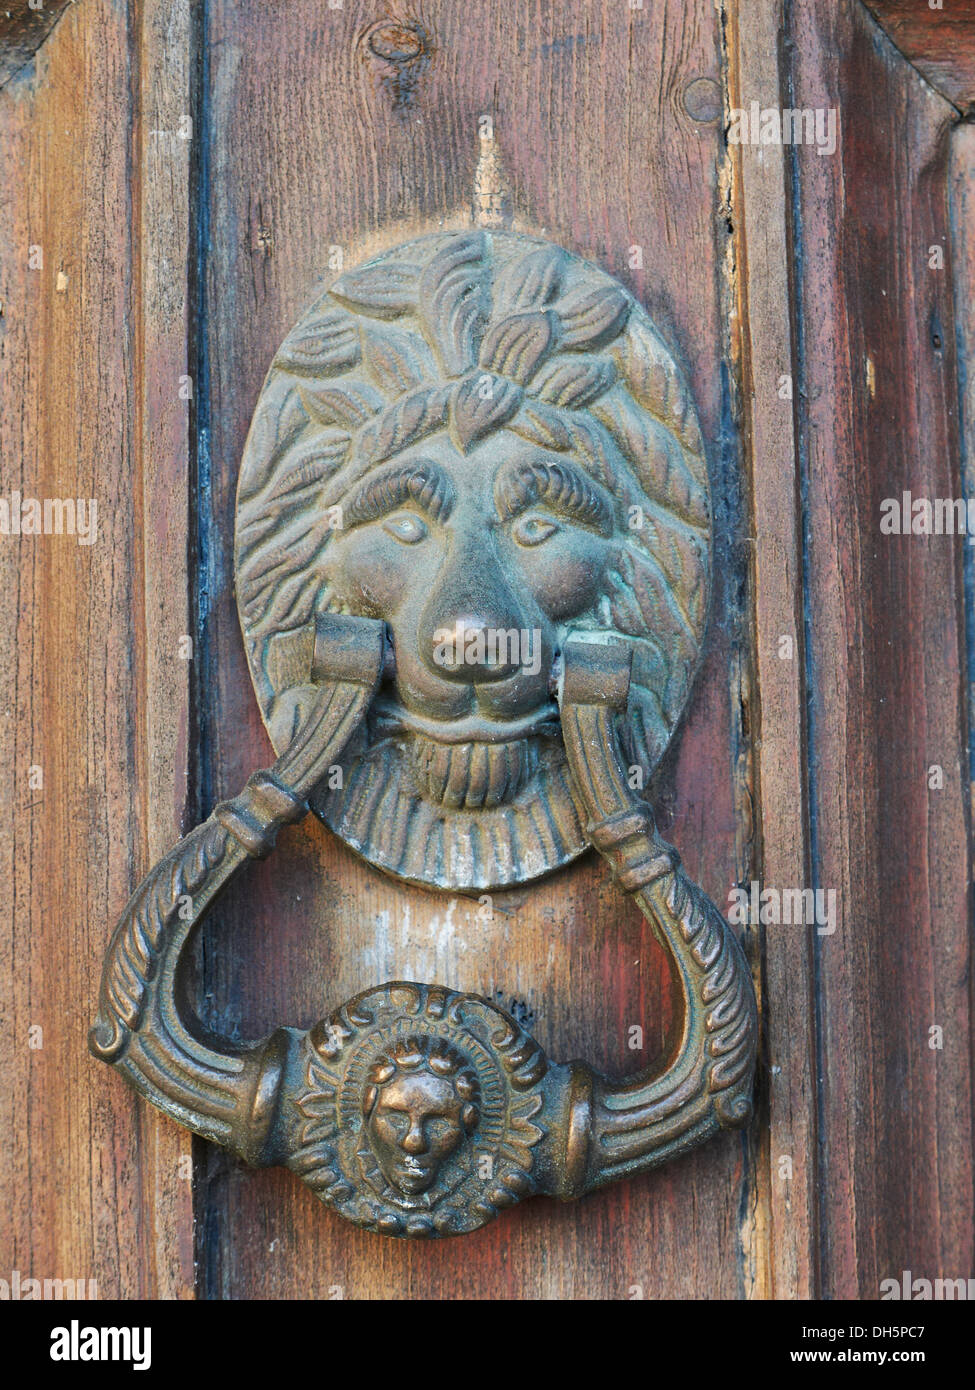 Lions Head heurtoir sur une porte en chêne Banque D'Images